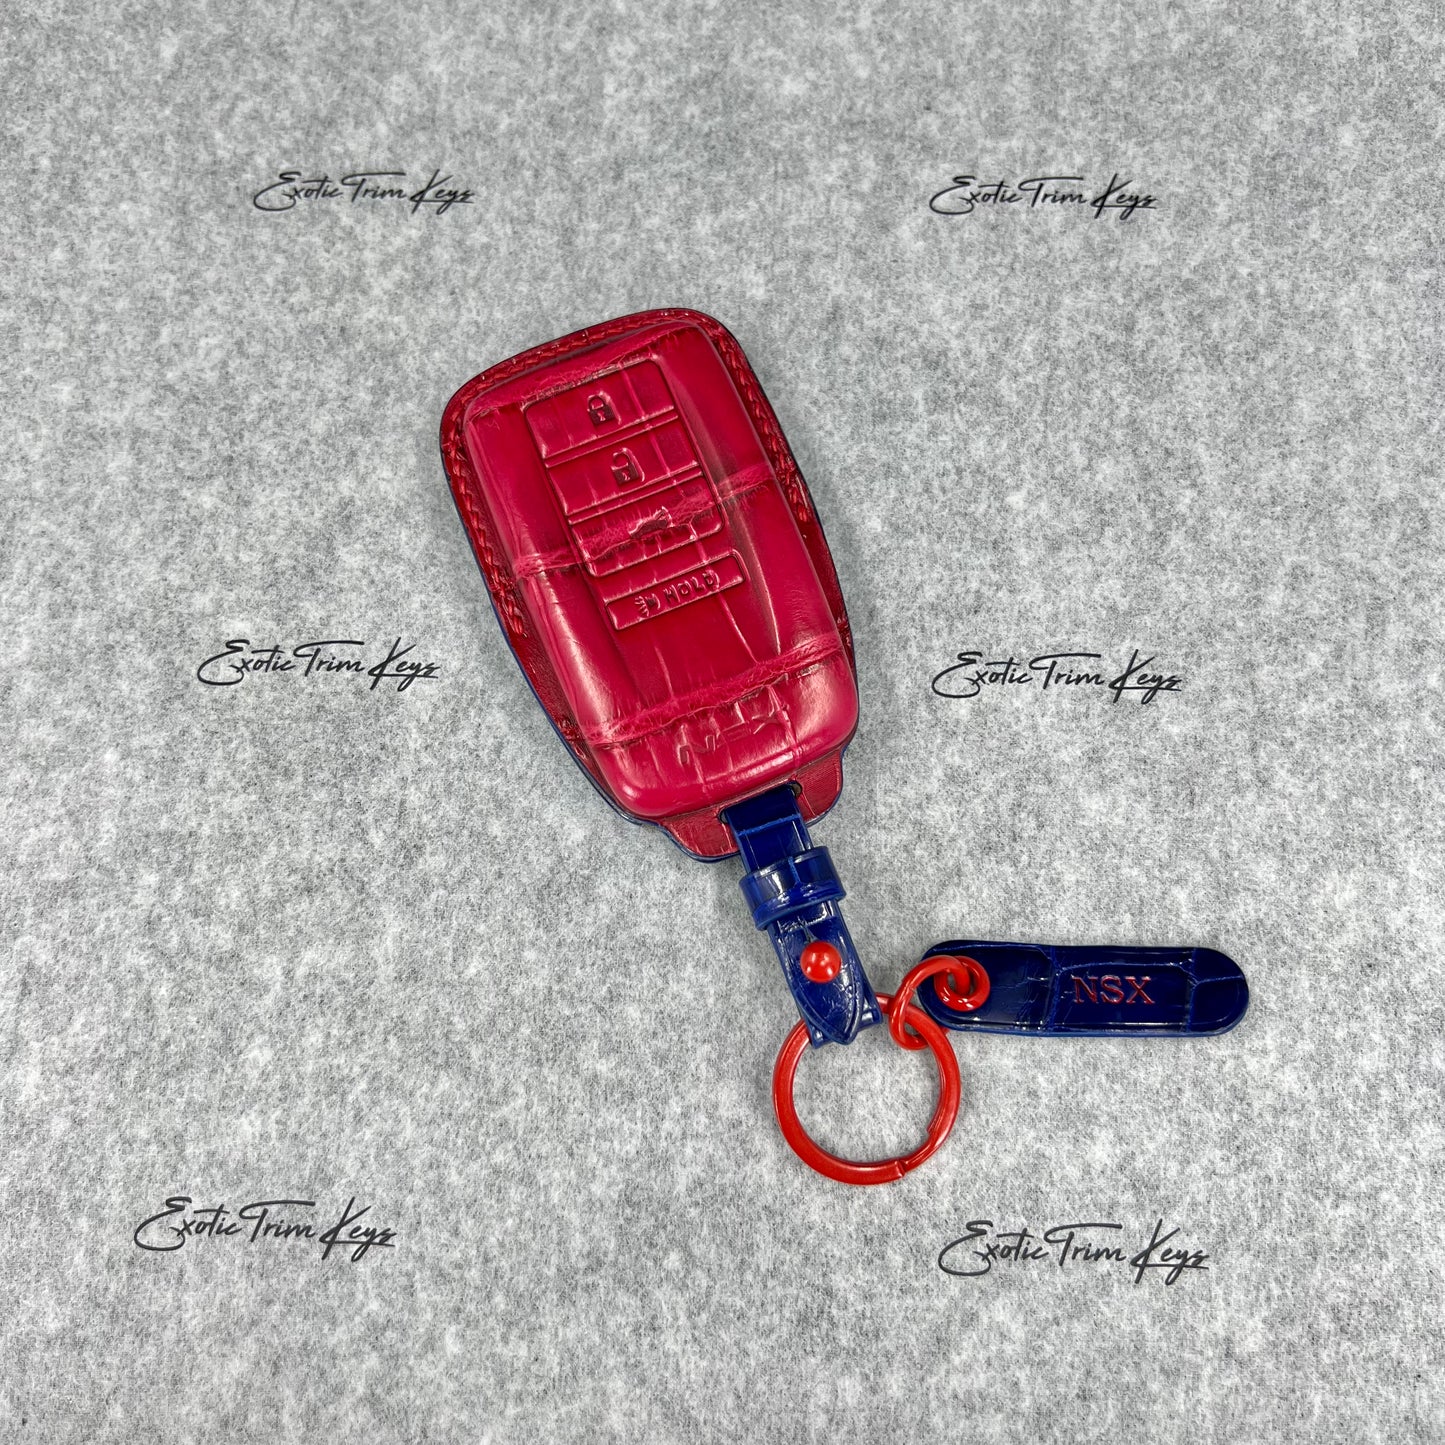 غطاء مفتاح Acura NSX - جلد التمساح باللونين الأزرق والأحمر / خياطة حمراء - متوفر في المخزون